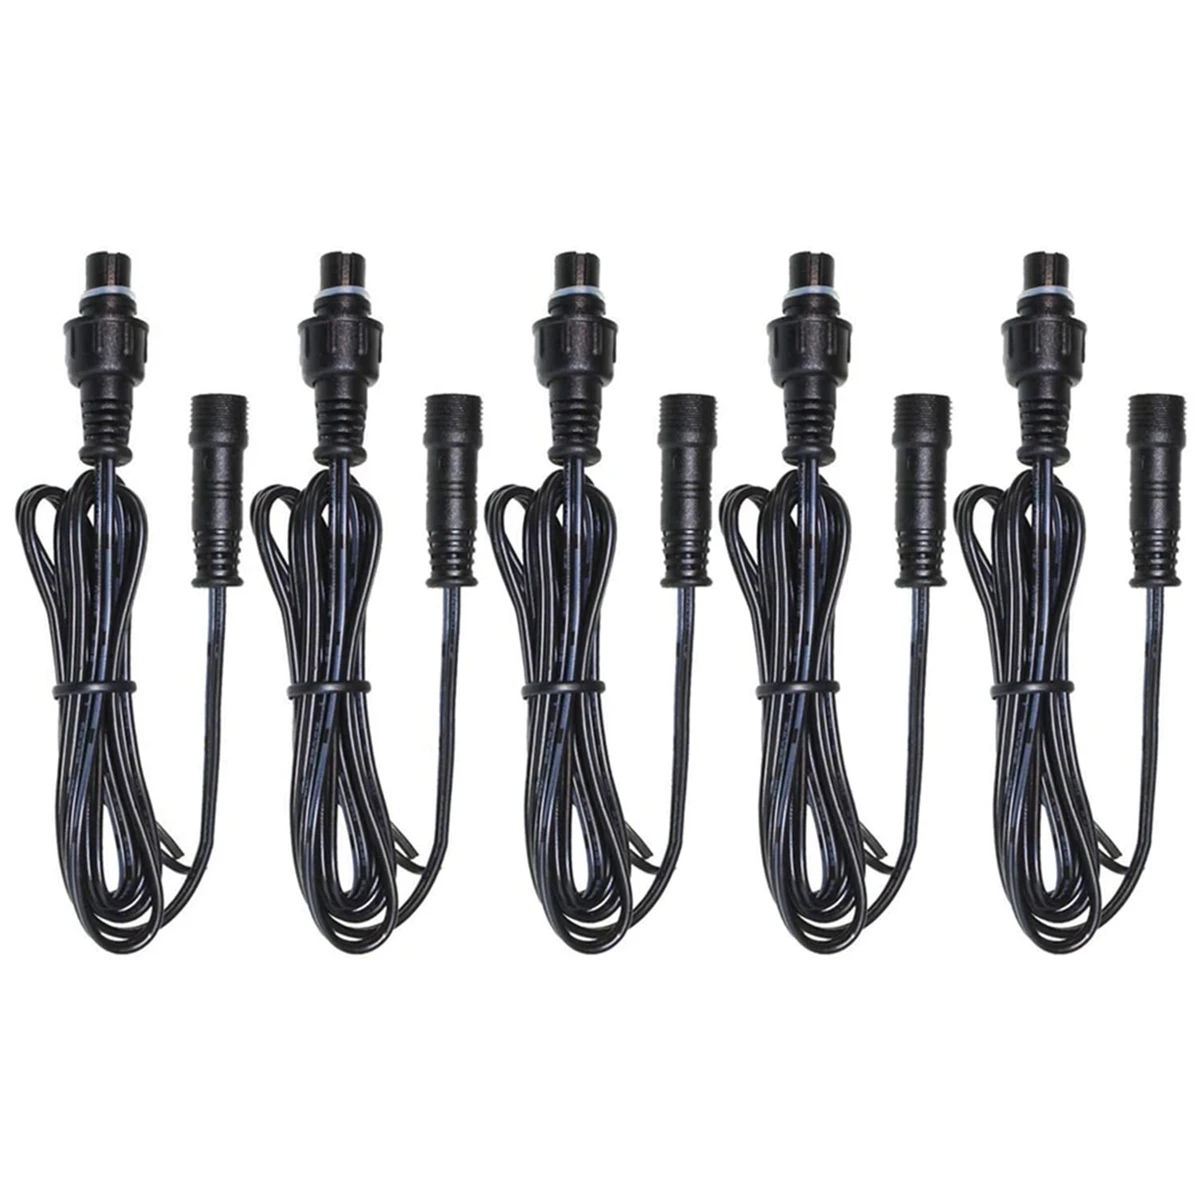  удължителен кабел черен външен 3.3 фута кабел с мъжки и женски конектори 1Meter / PCS 5Pack за SMY LED палубни светлини-UL изброени